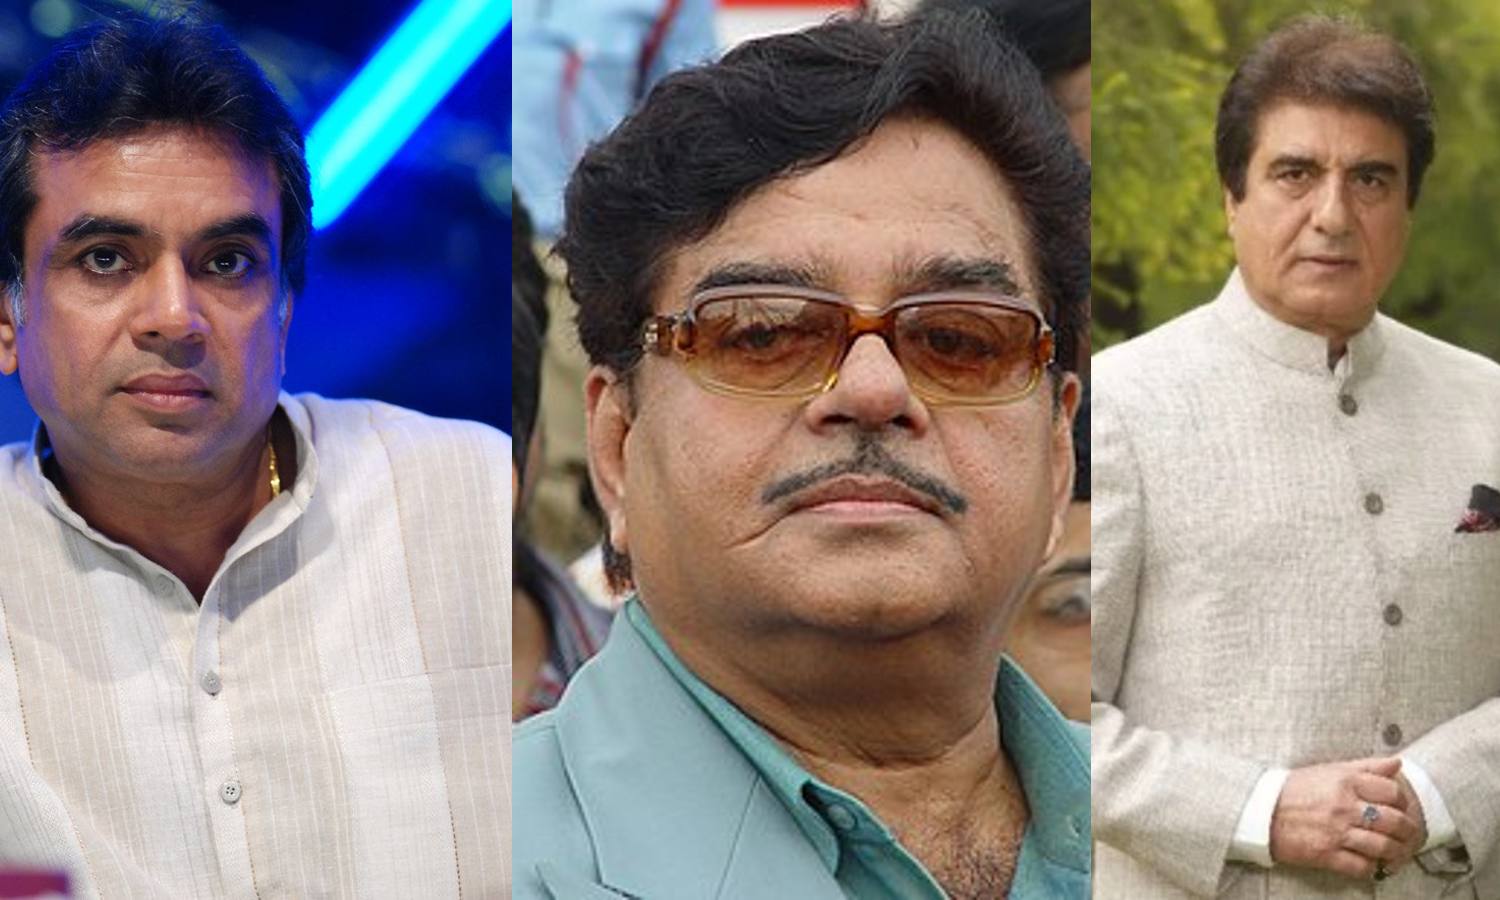 बॉलीवुड के ये स्टार्स जो राजनीति में लहरा रहे परचम (फोटोः सोशल मीडिया)